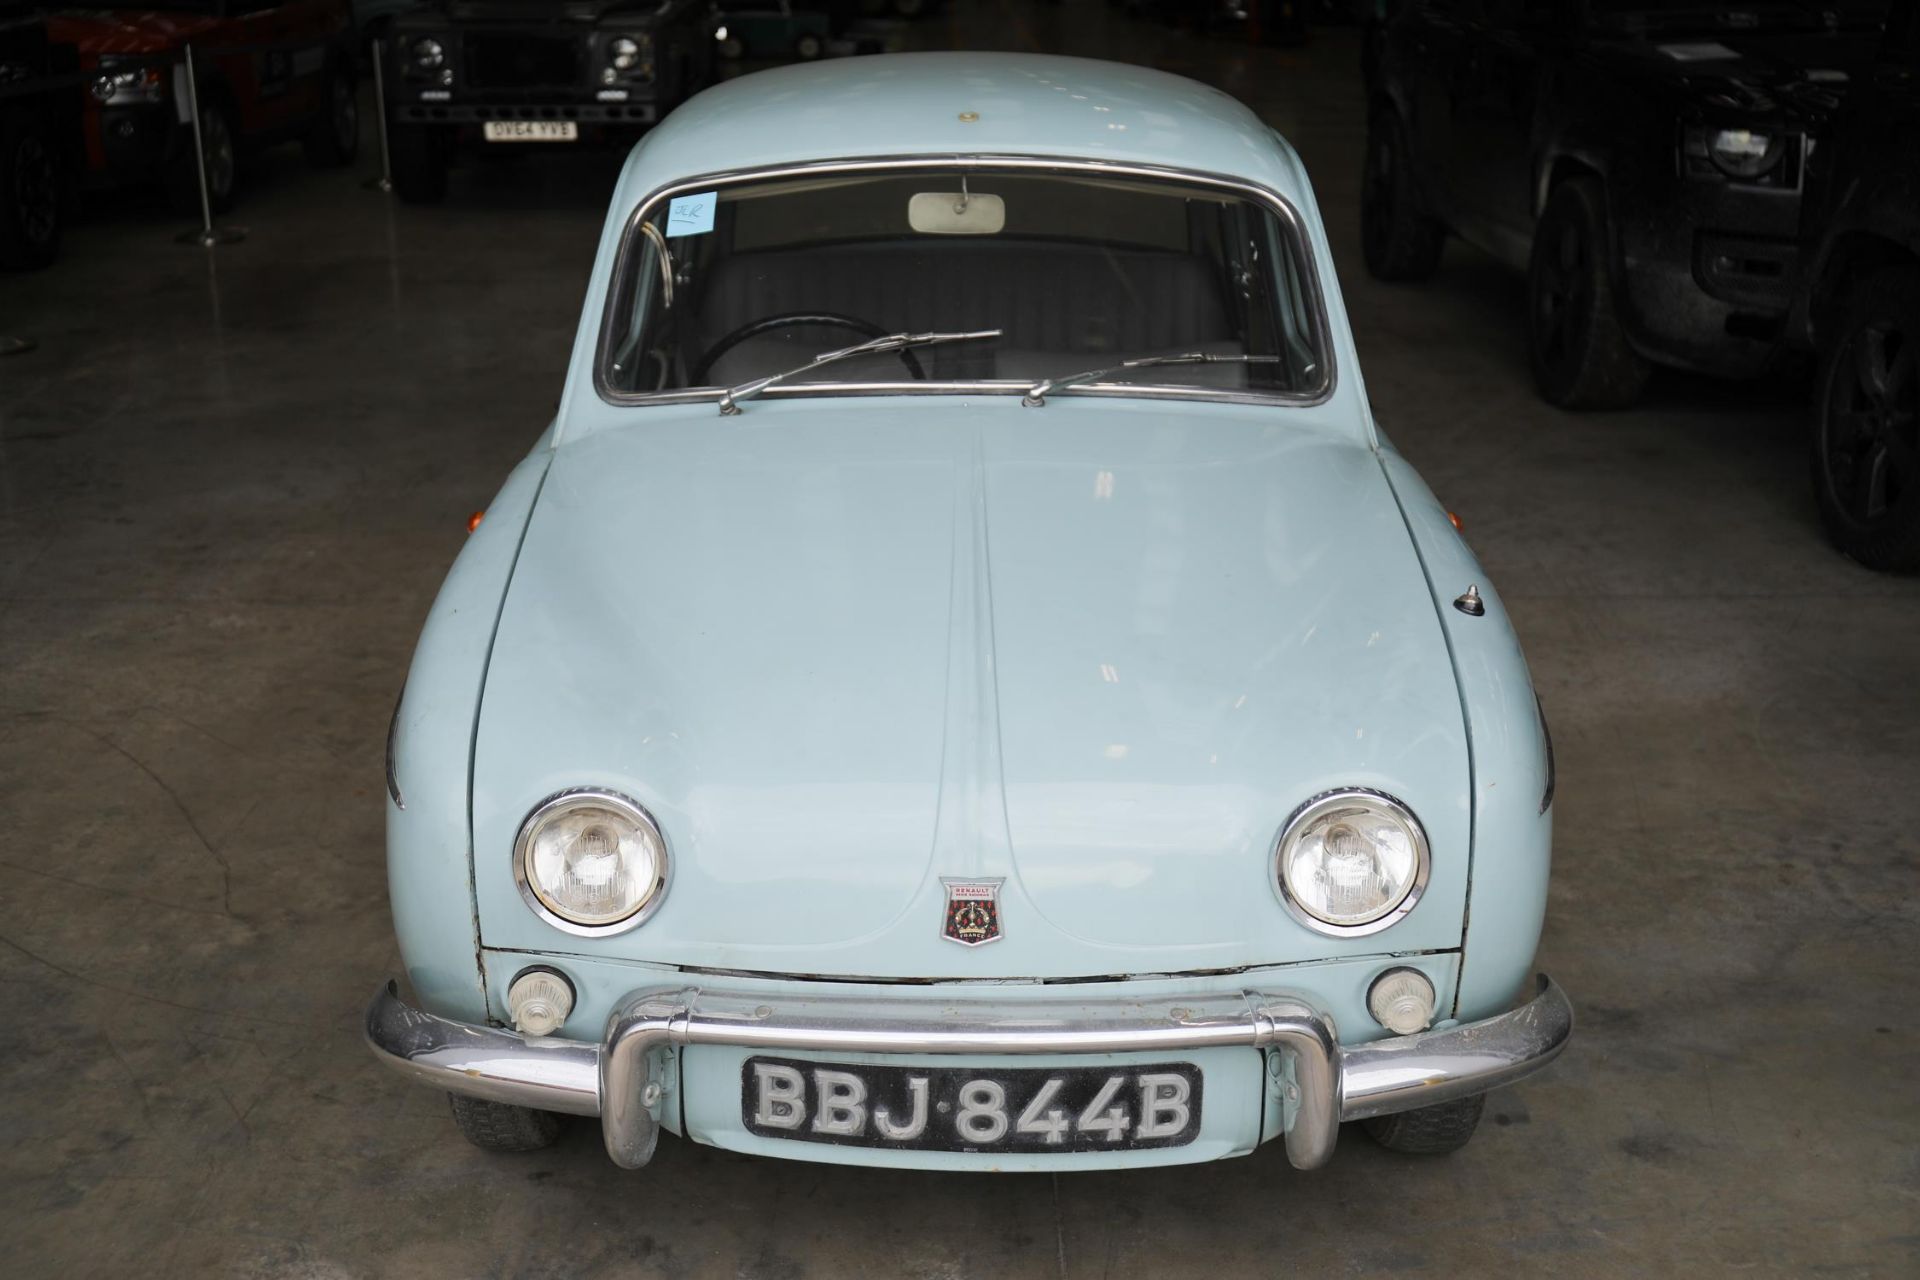 1964 Renault Dauphine Gordini - Image 5 of 10